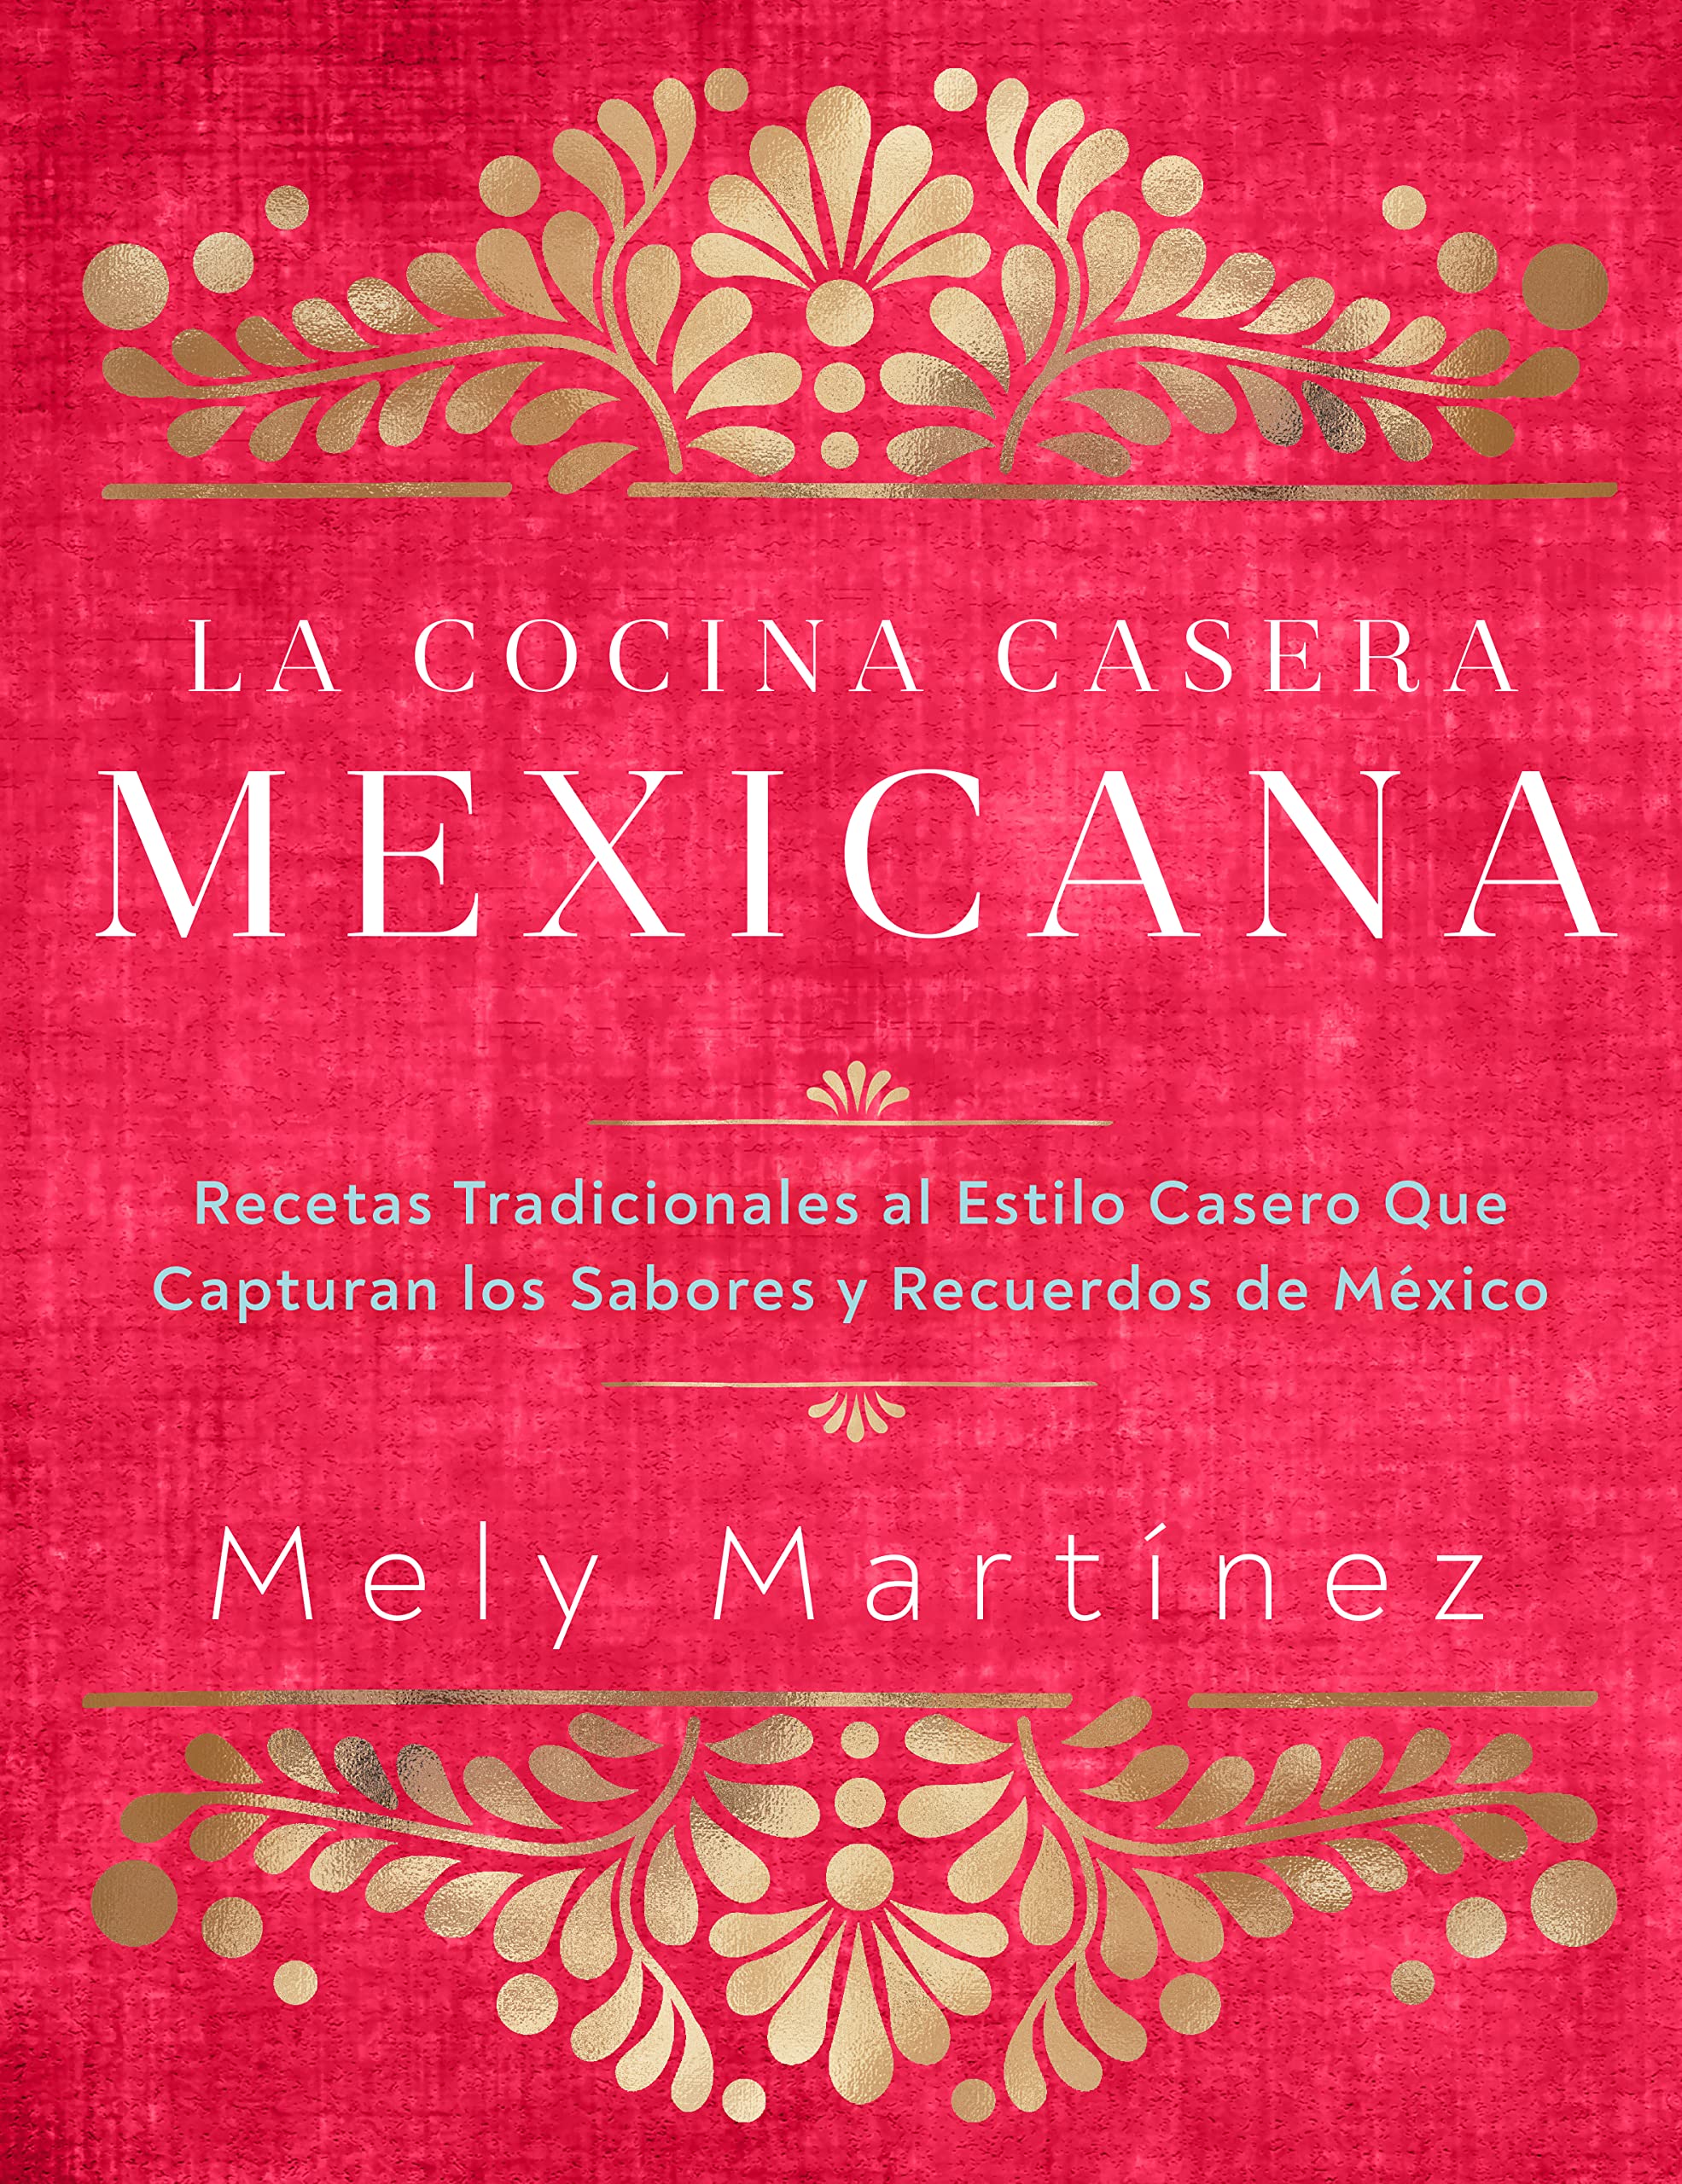 La Cocina Casera Mexicana: Recetas Tradicionales al Estilo Casero que Capturan los Sabores y Recuerdos de Mexico (Mely Martinez)